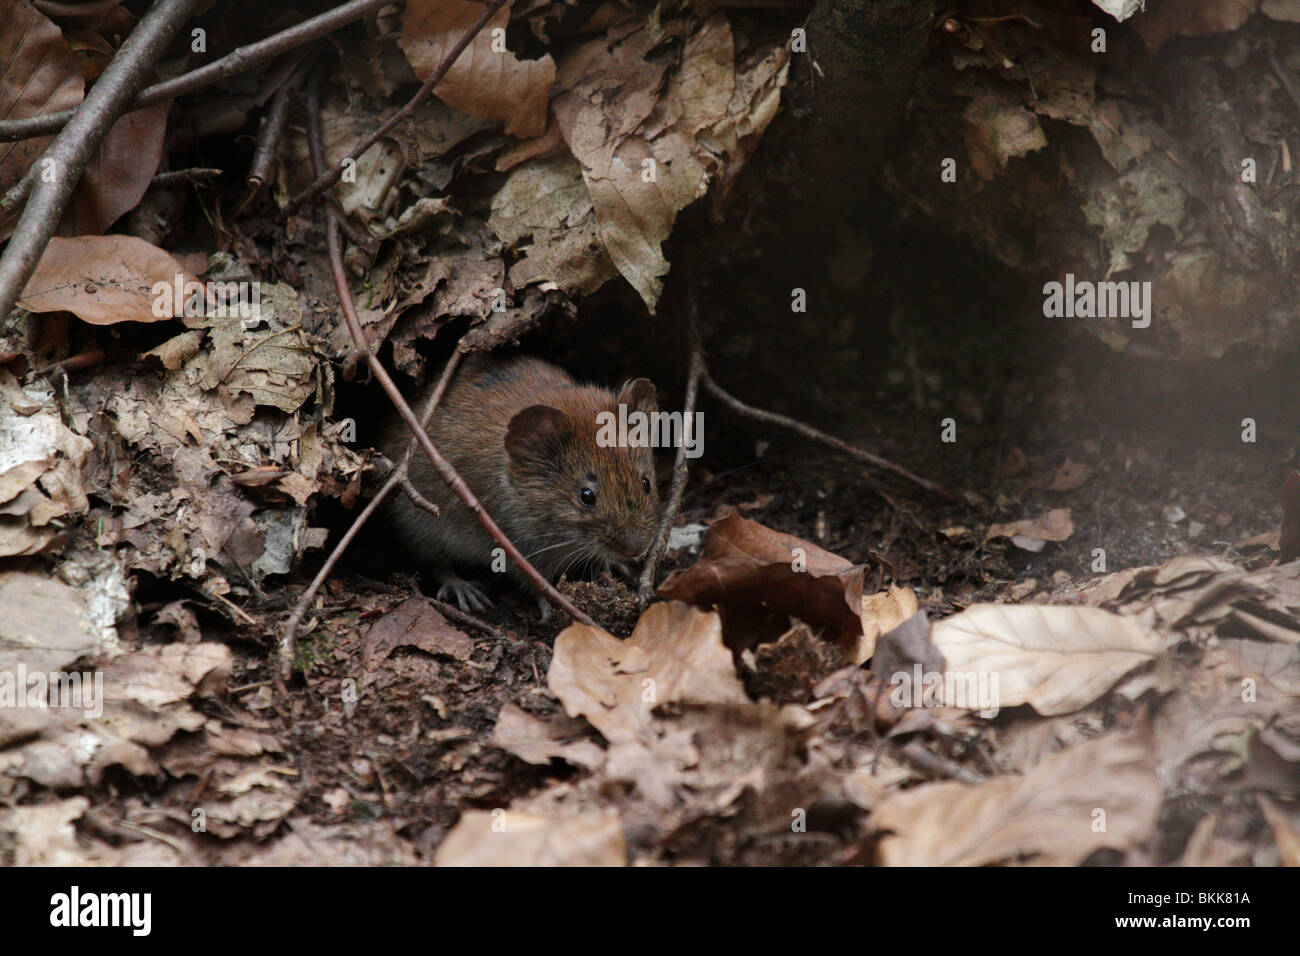 La souris du campagnol roussâtre (Myodes glareolus) dans son habitat naturel. Ils sont mignons (assez) des vecteurs de la Hanta virus. Banque D'Images